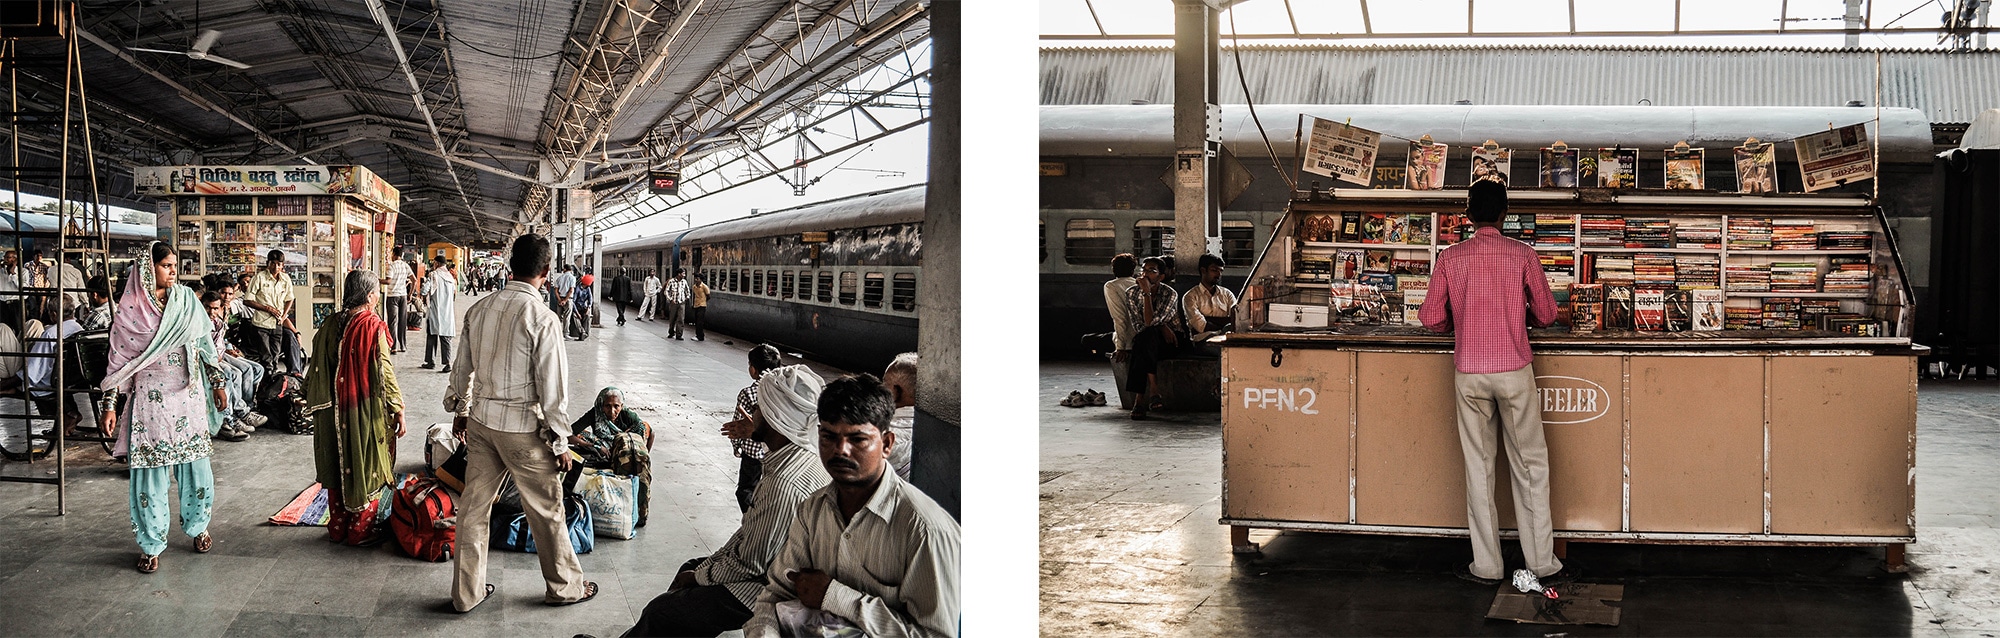 La gare d'Agra en Inde